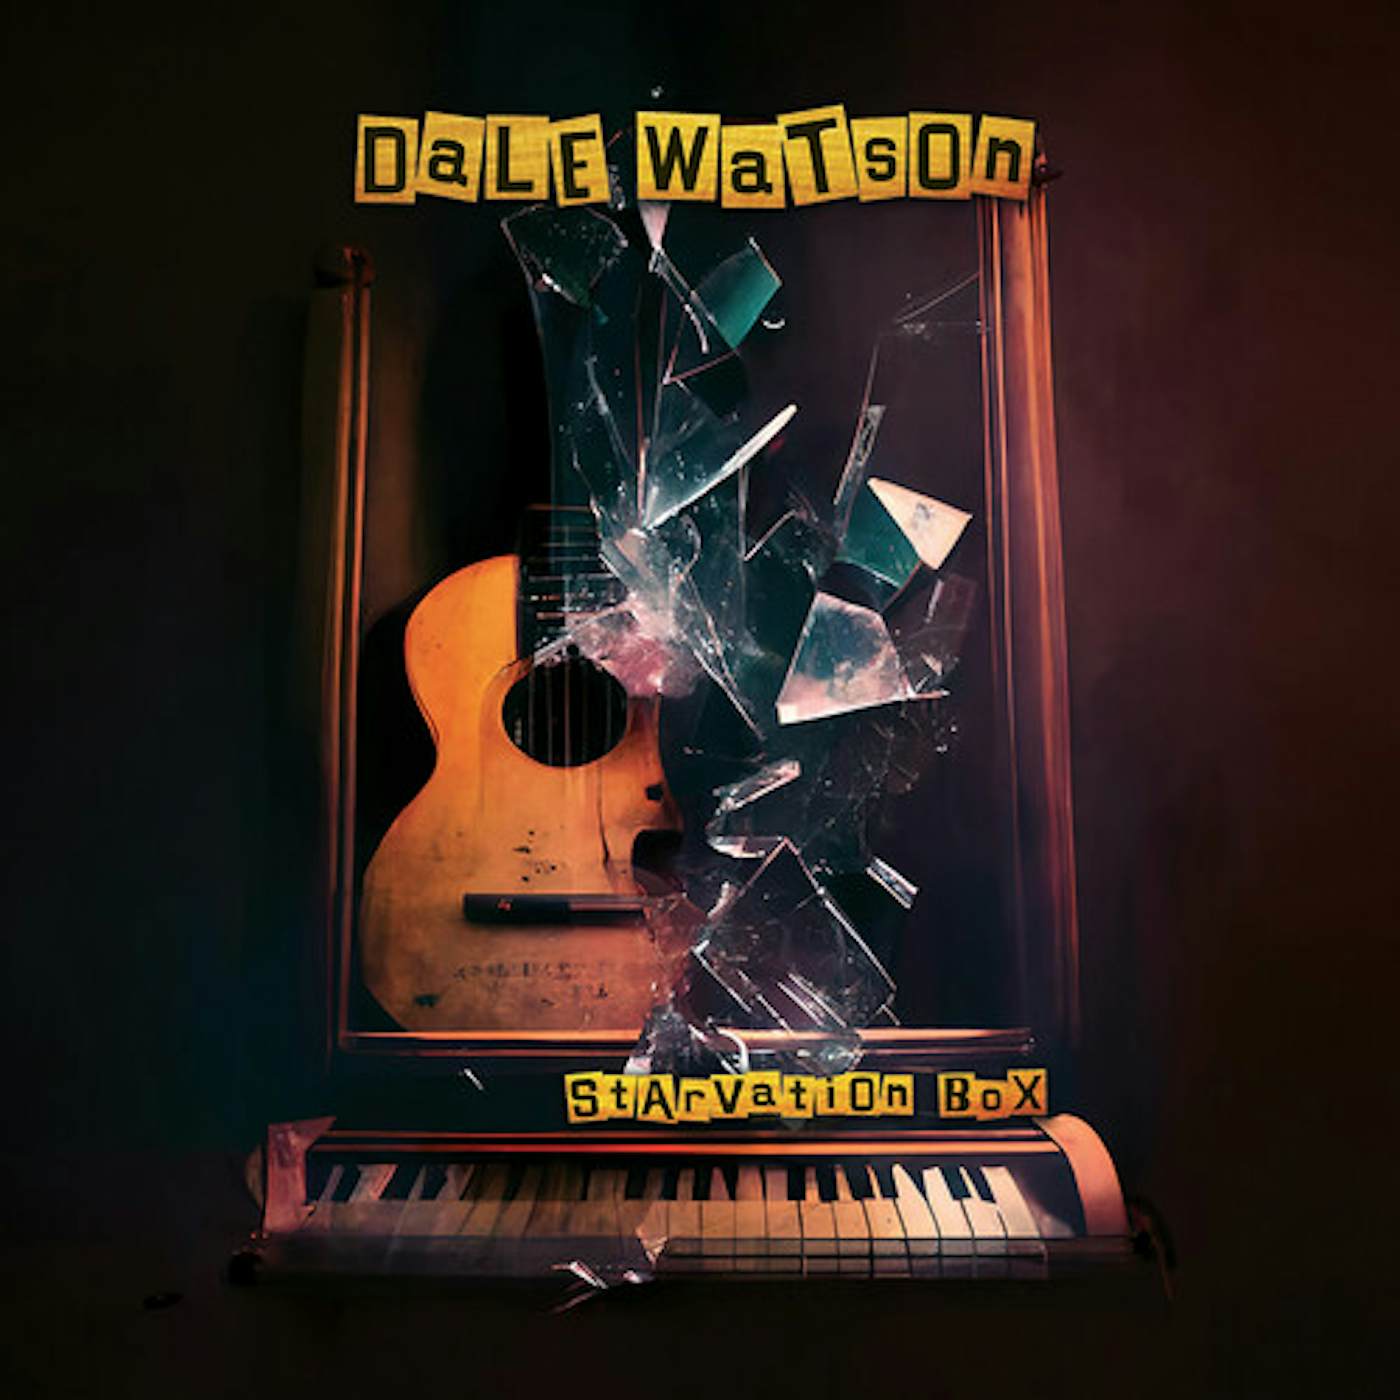 Dale Watson STARVATION BOX CD